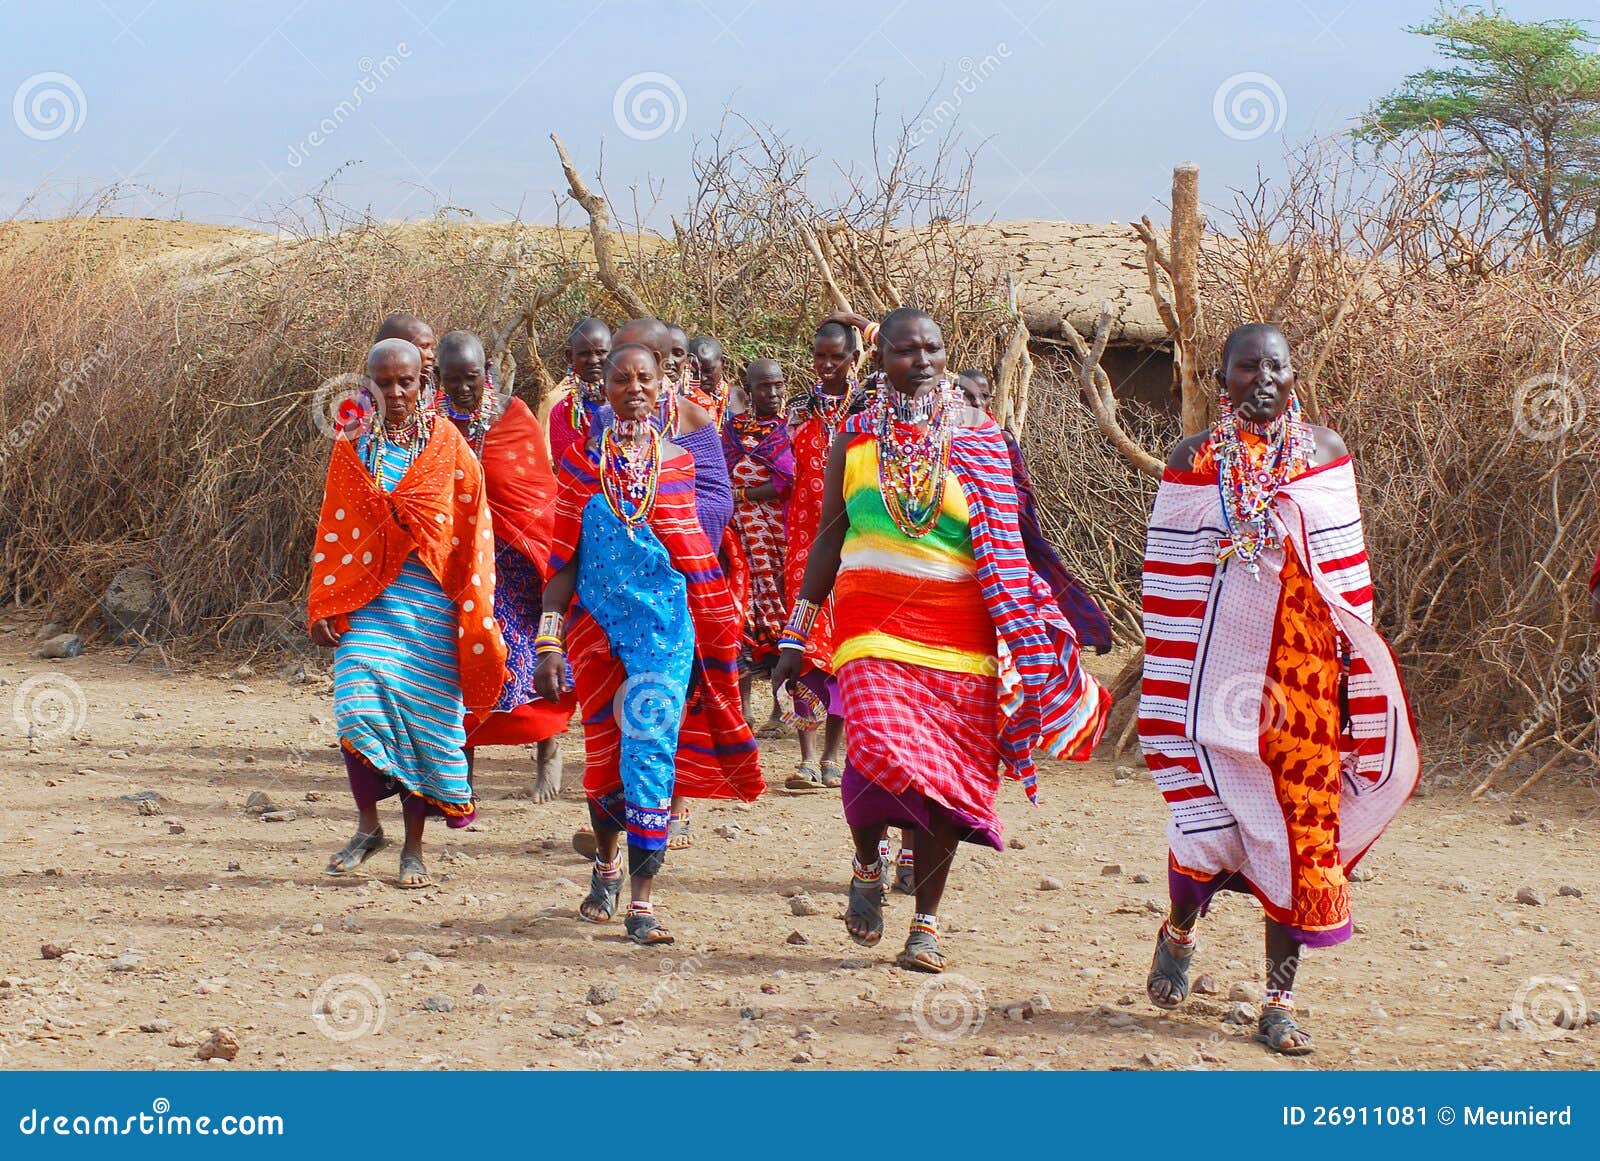 AMBOSELI, KENYA - OUTUBRO 13: O grupo de homens africanos não identificados do tribo do Masai prepara-se para mostrar uma dança tradicional do salto outubro em 13, 2011 no Masai Mara, Kenya. Estão nómadas e vivos em vilas pequenas.